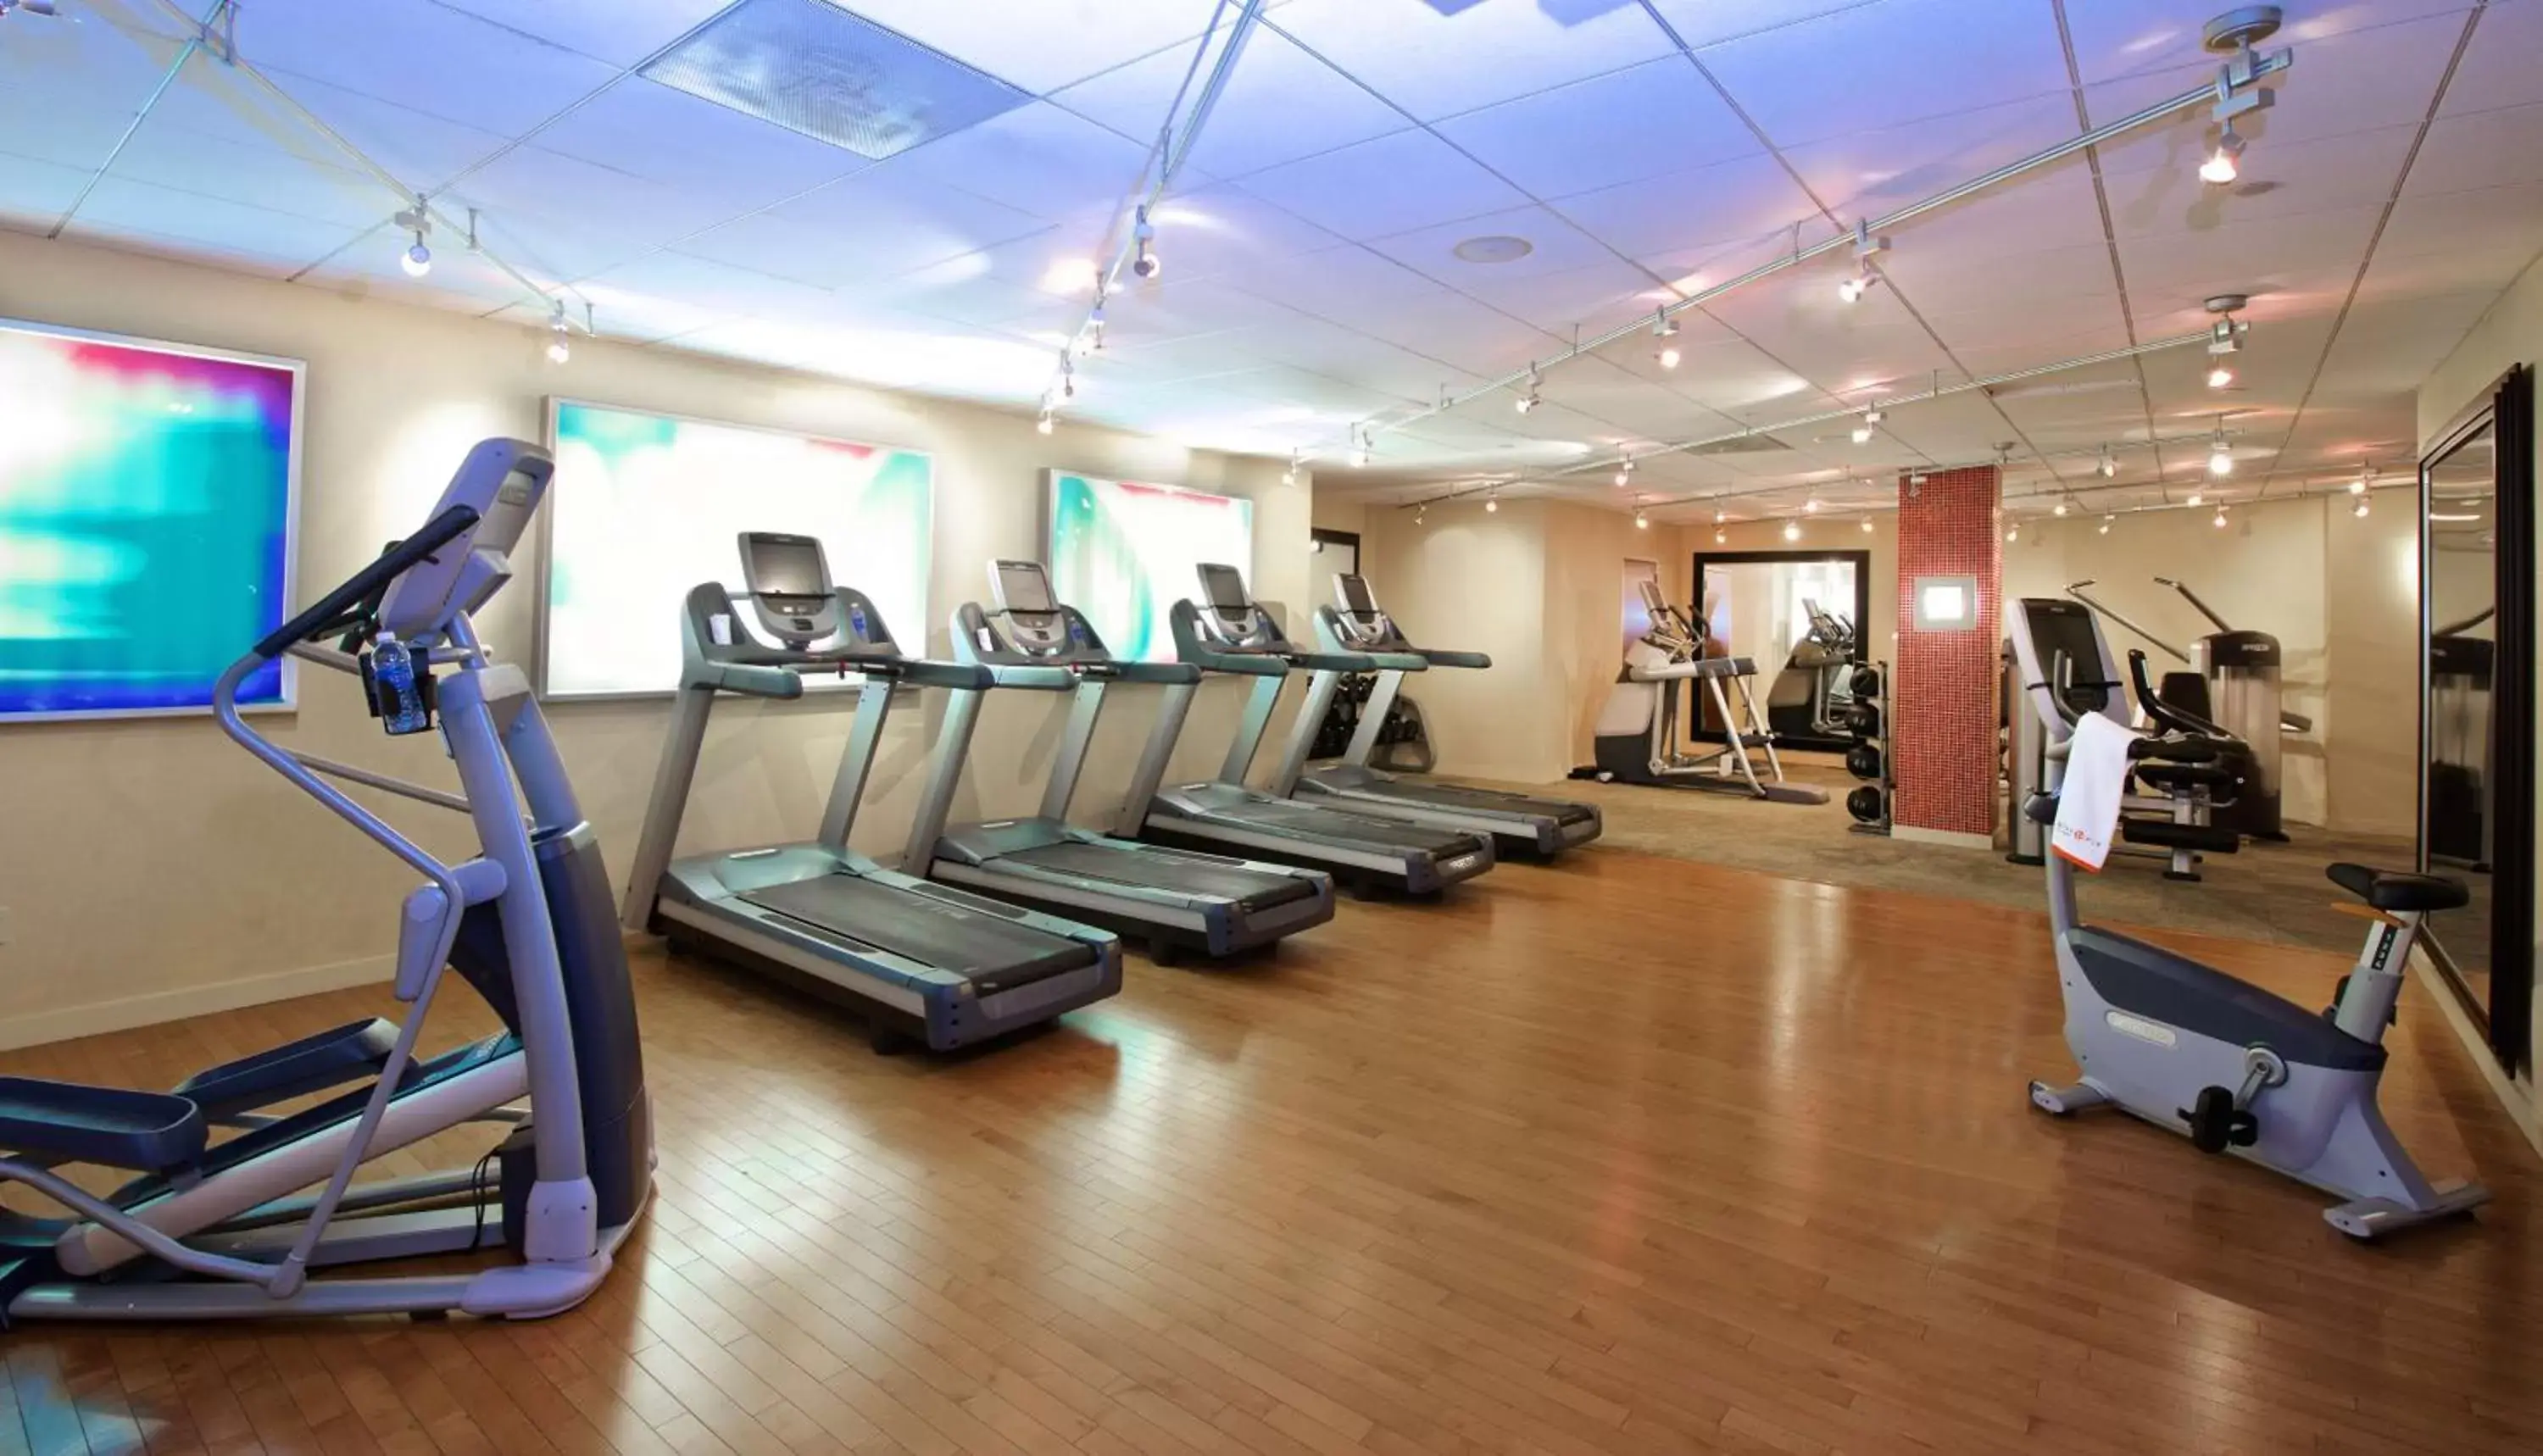 Fitness centre/facilities, Fitness Center/Facilities in Hyatt Regency Crystal City at Reagan National Airport